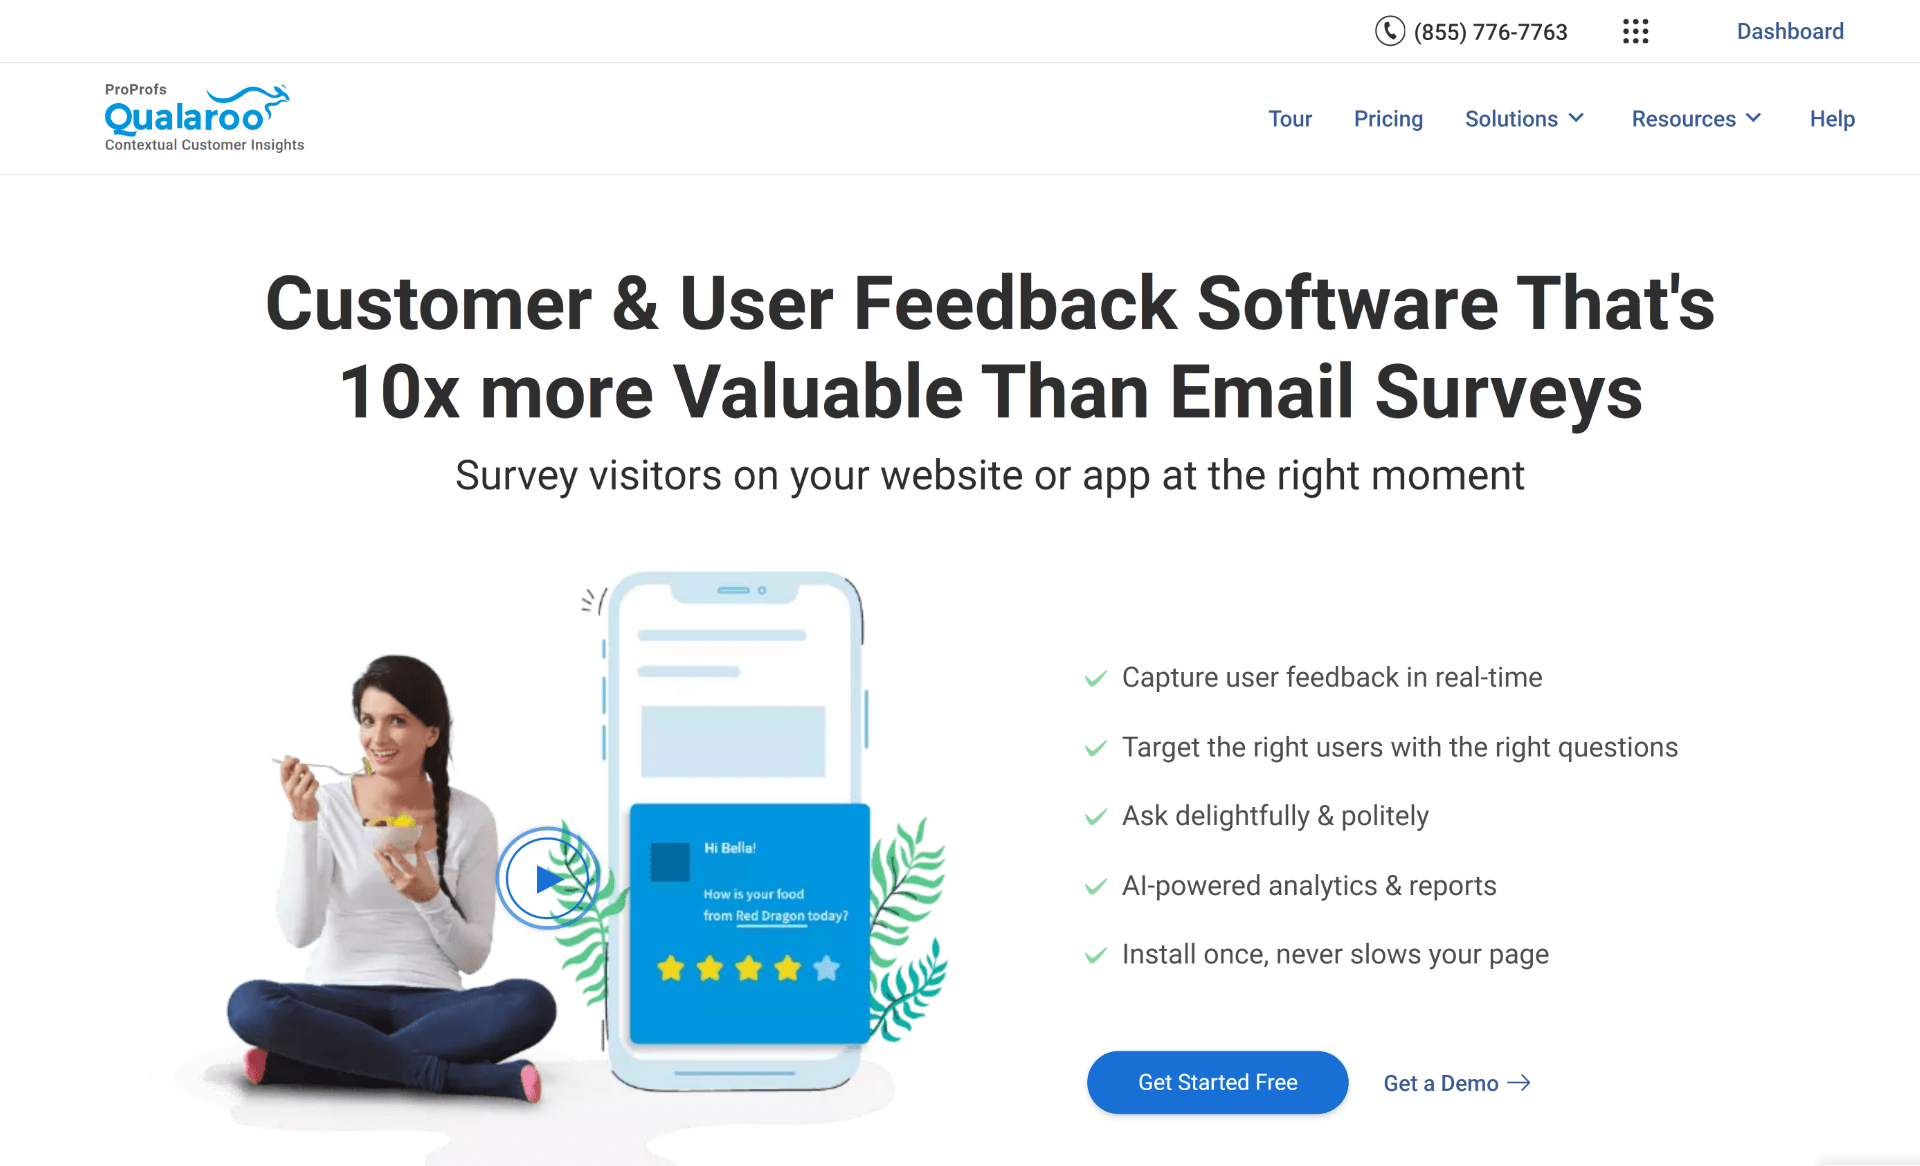 Launch your survey - CheckMarket